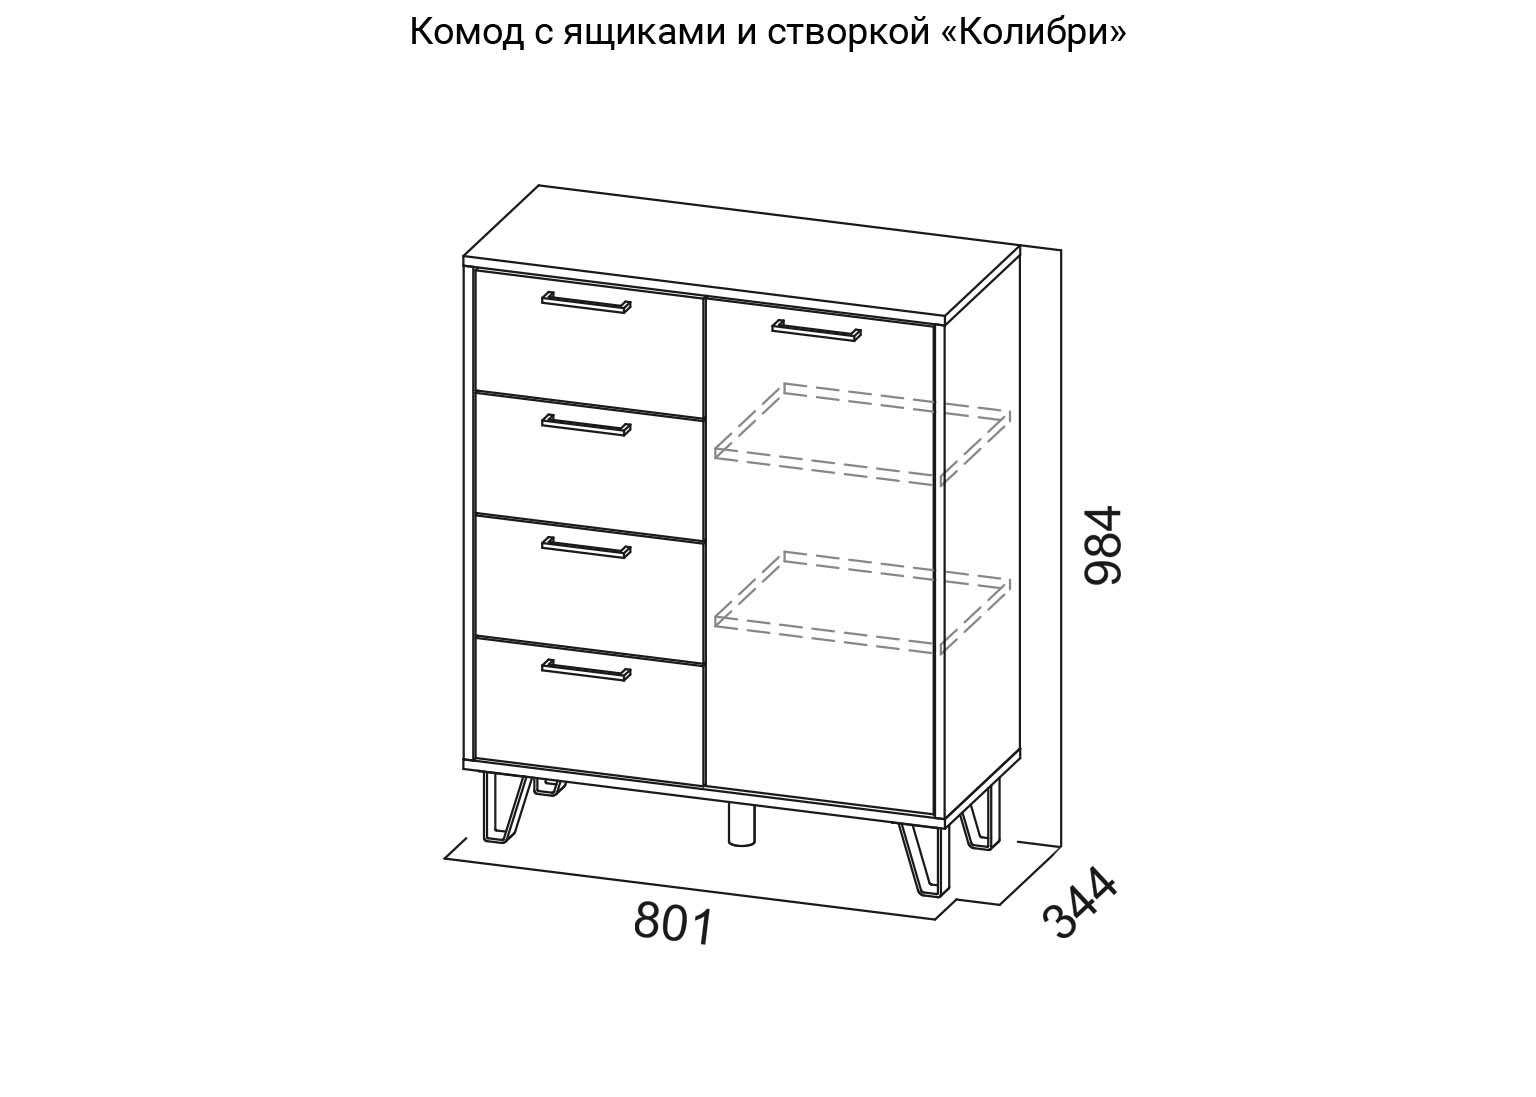 Комод с ящиками и створкой Колибри схема SV-Мебель